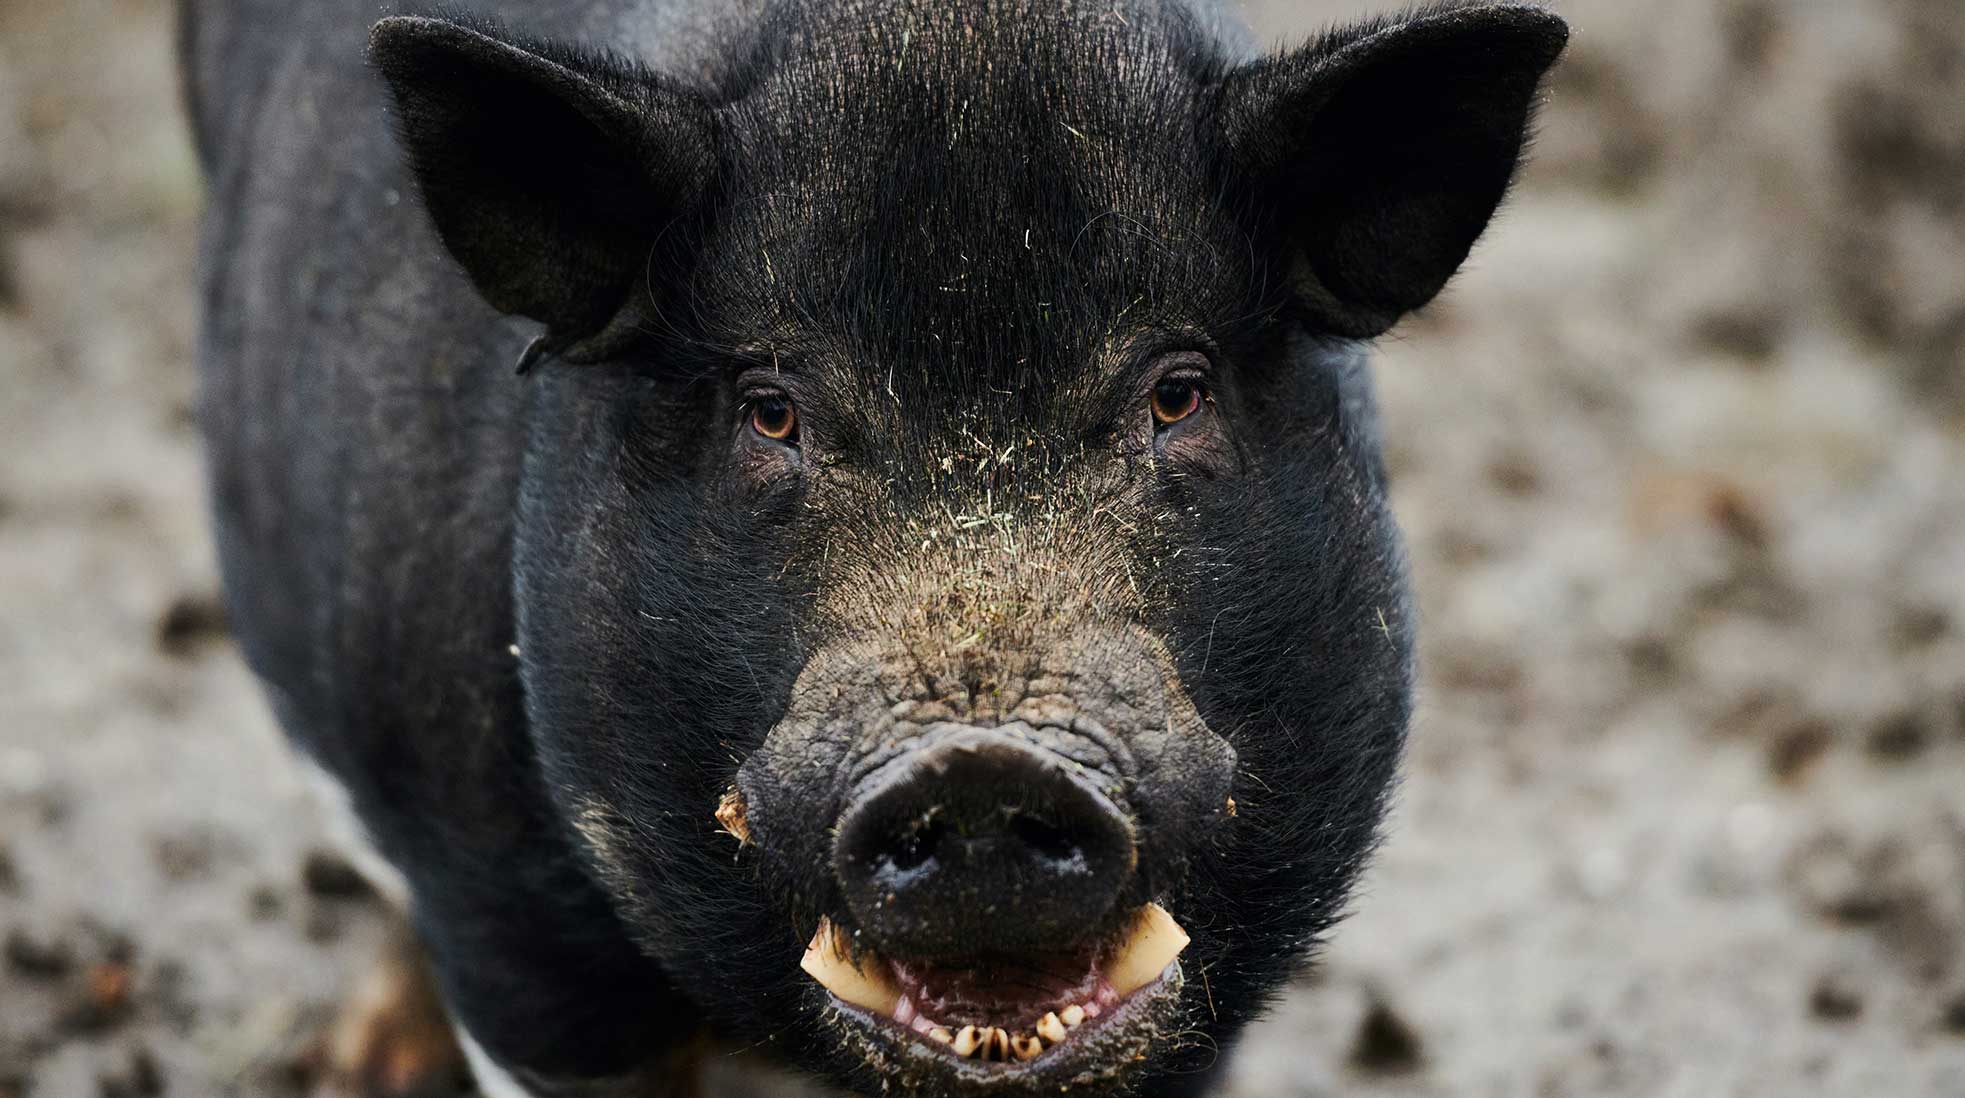 En guvernörs grisfarm hamnade i strålkastarljuset efter en granskning. Svinet på bilden har inget med händelsen att göra. Foto: Steve Smith/Unsplash